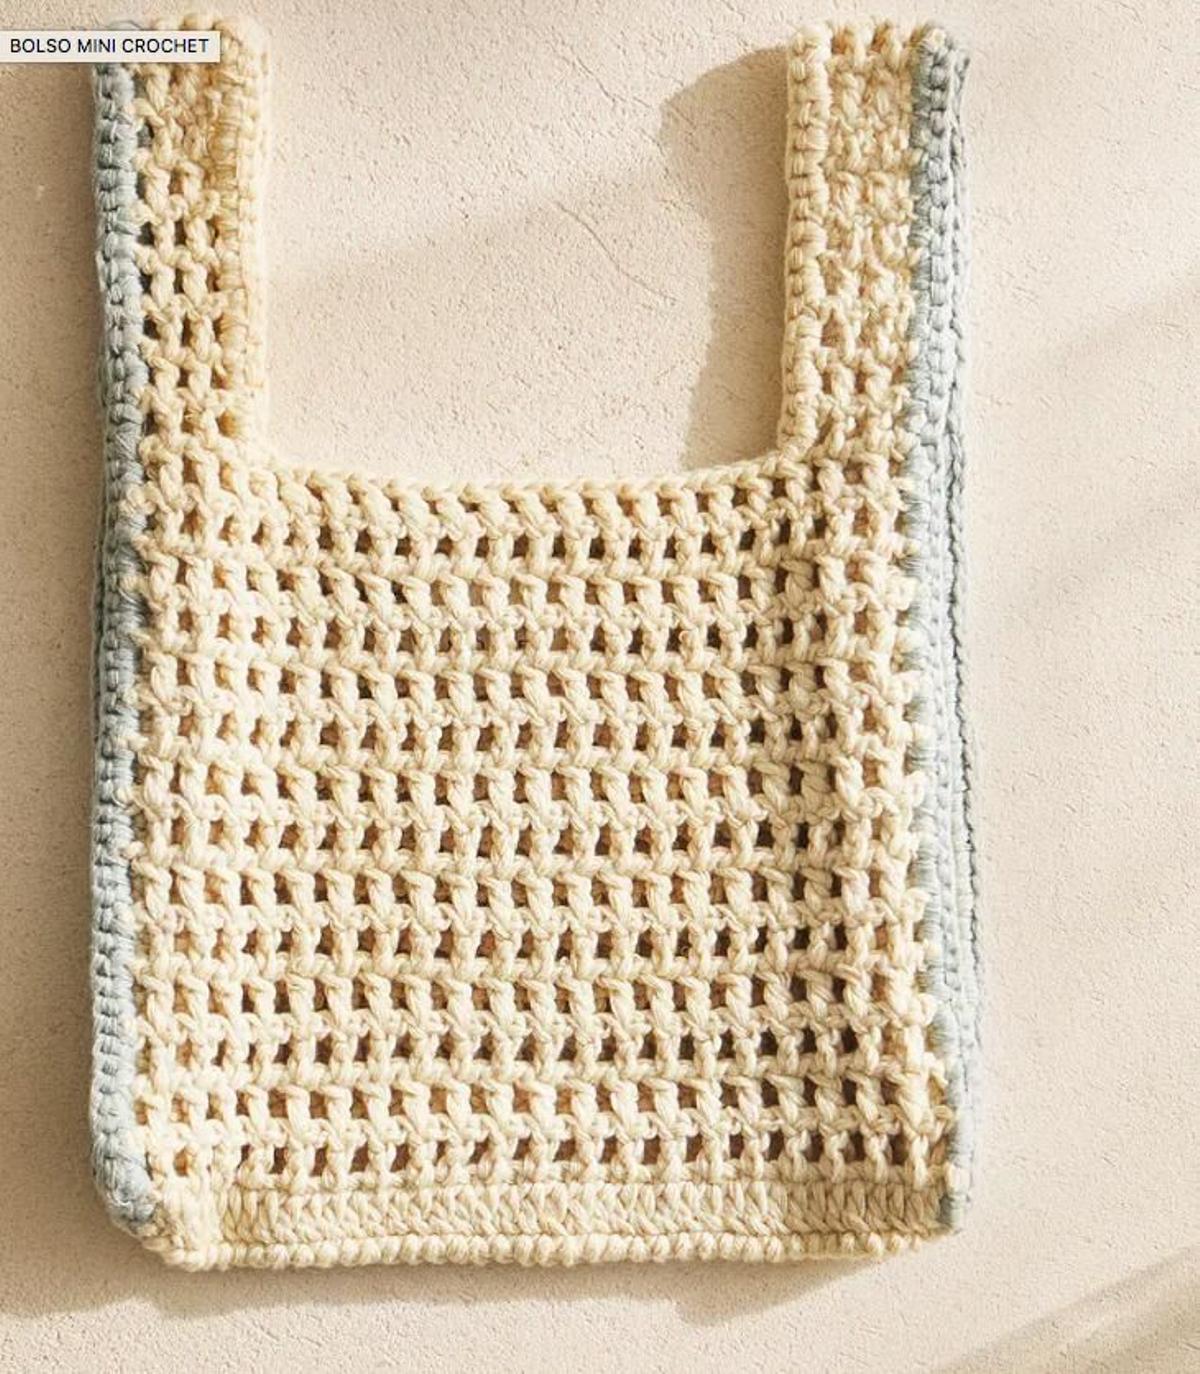 Mini bolso de crochet para el verano de Zara home